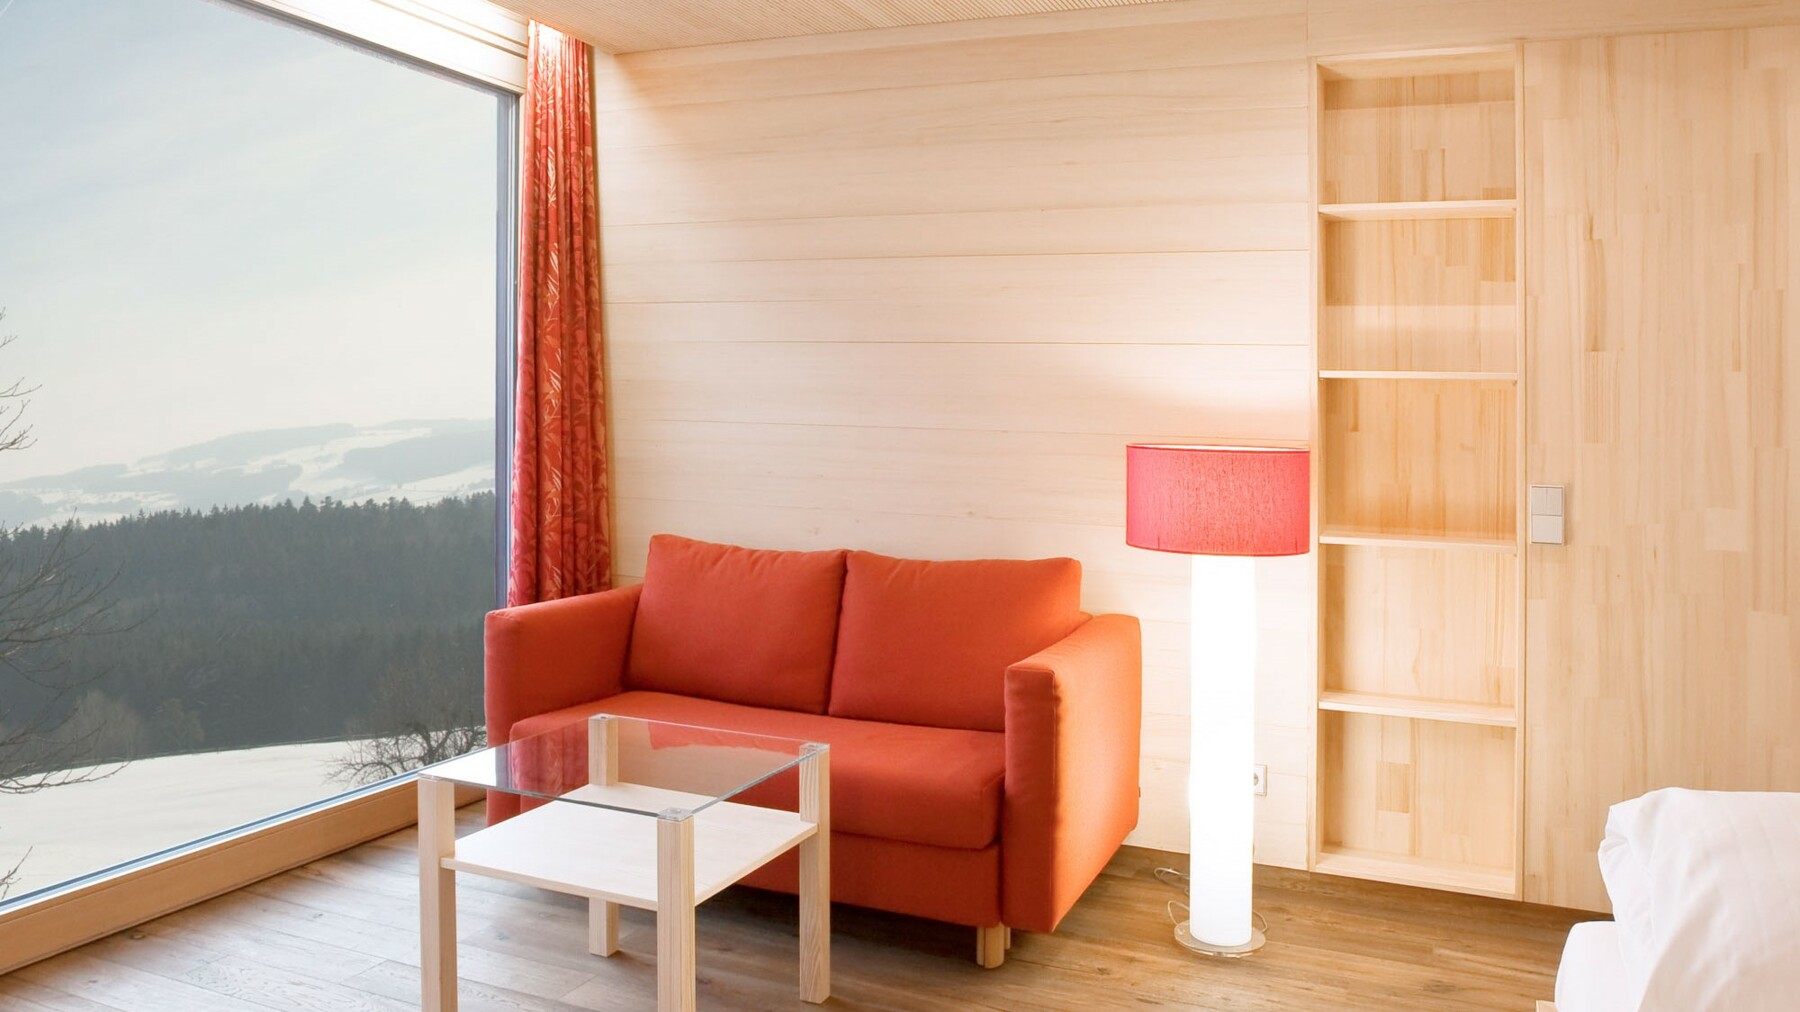 Das in Holz gekleidete Hotelzimmer gewährt durch ein, die Wandseite einnehmendes Panoramafenster, wunderschöne Ausblicke in die Natur. 